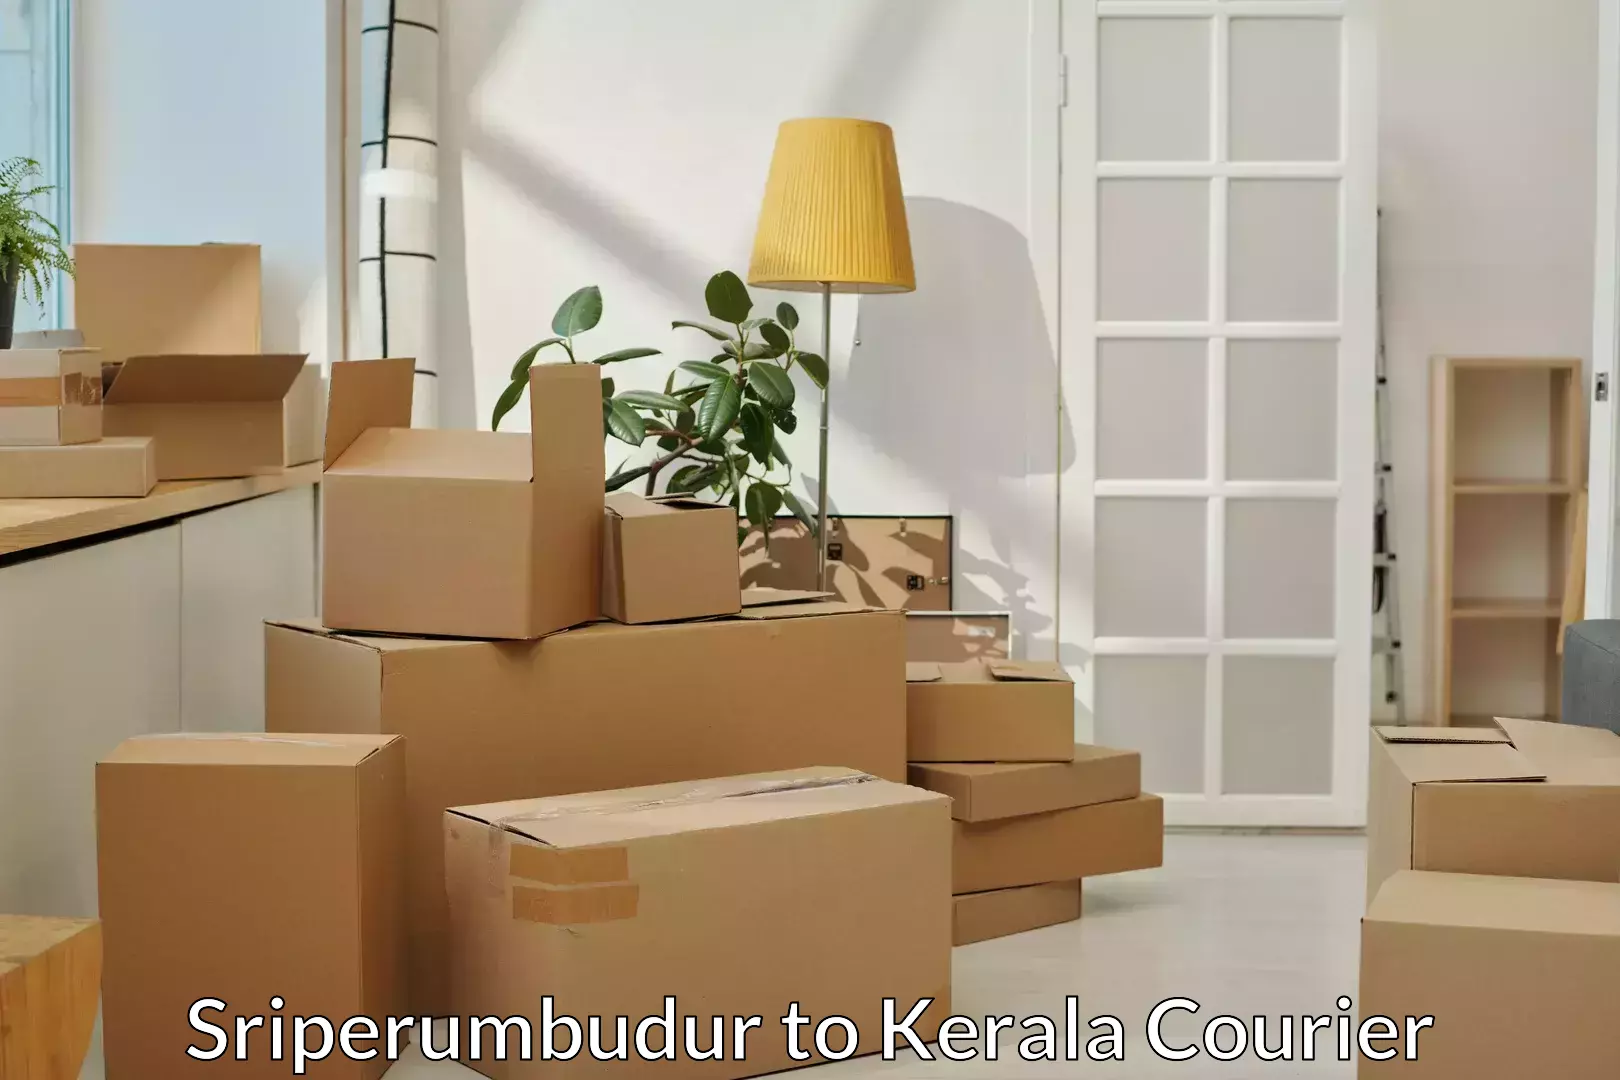 Furniture transport professionals Sriperumbudur to Kerala